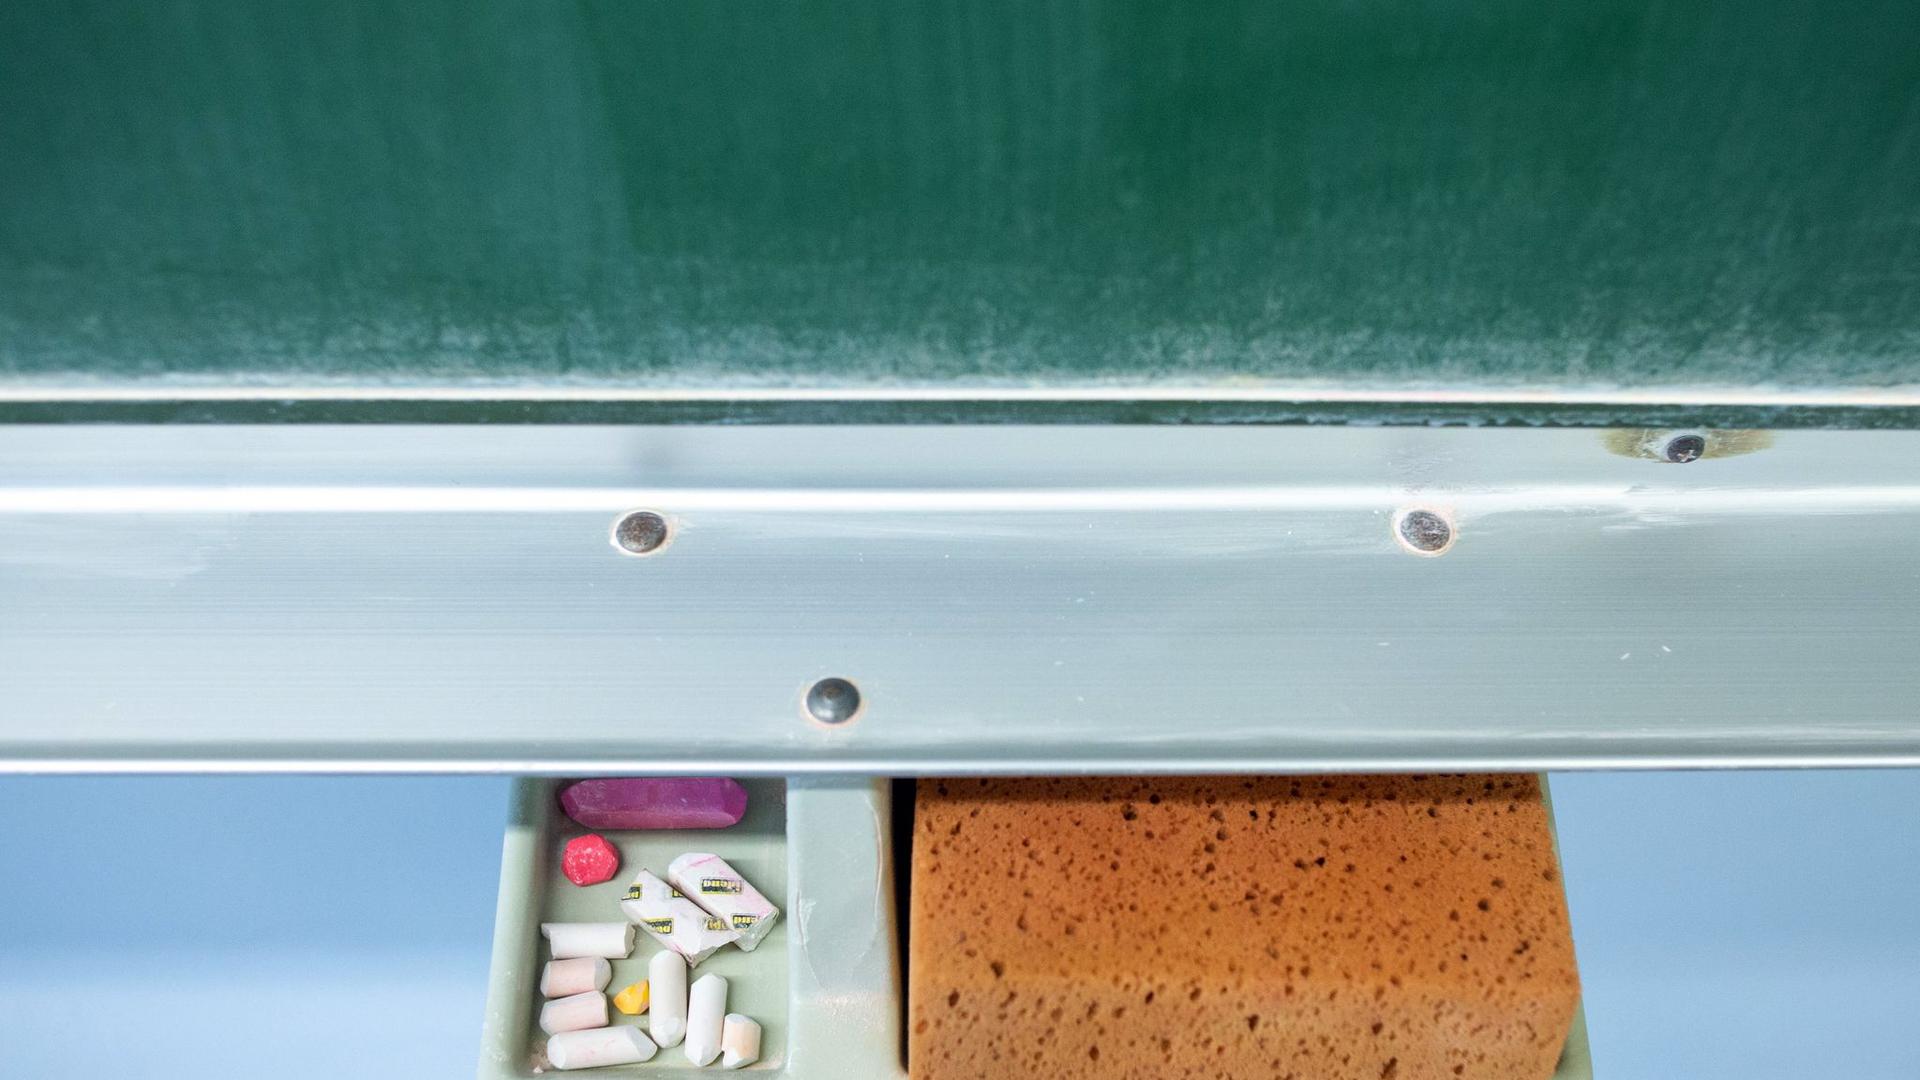 Schwamm und Kreide liegen in einem Klassenraum unter einer Tafel.